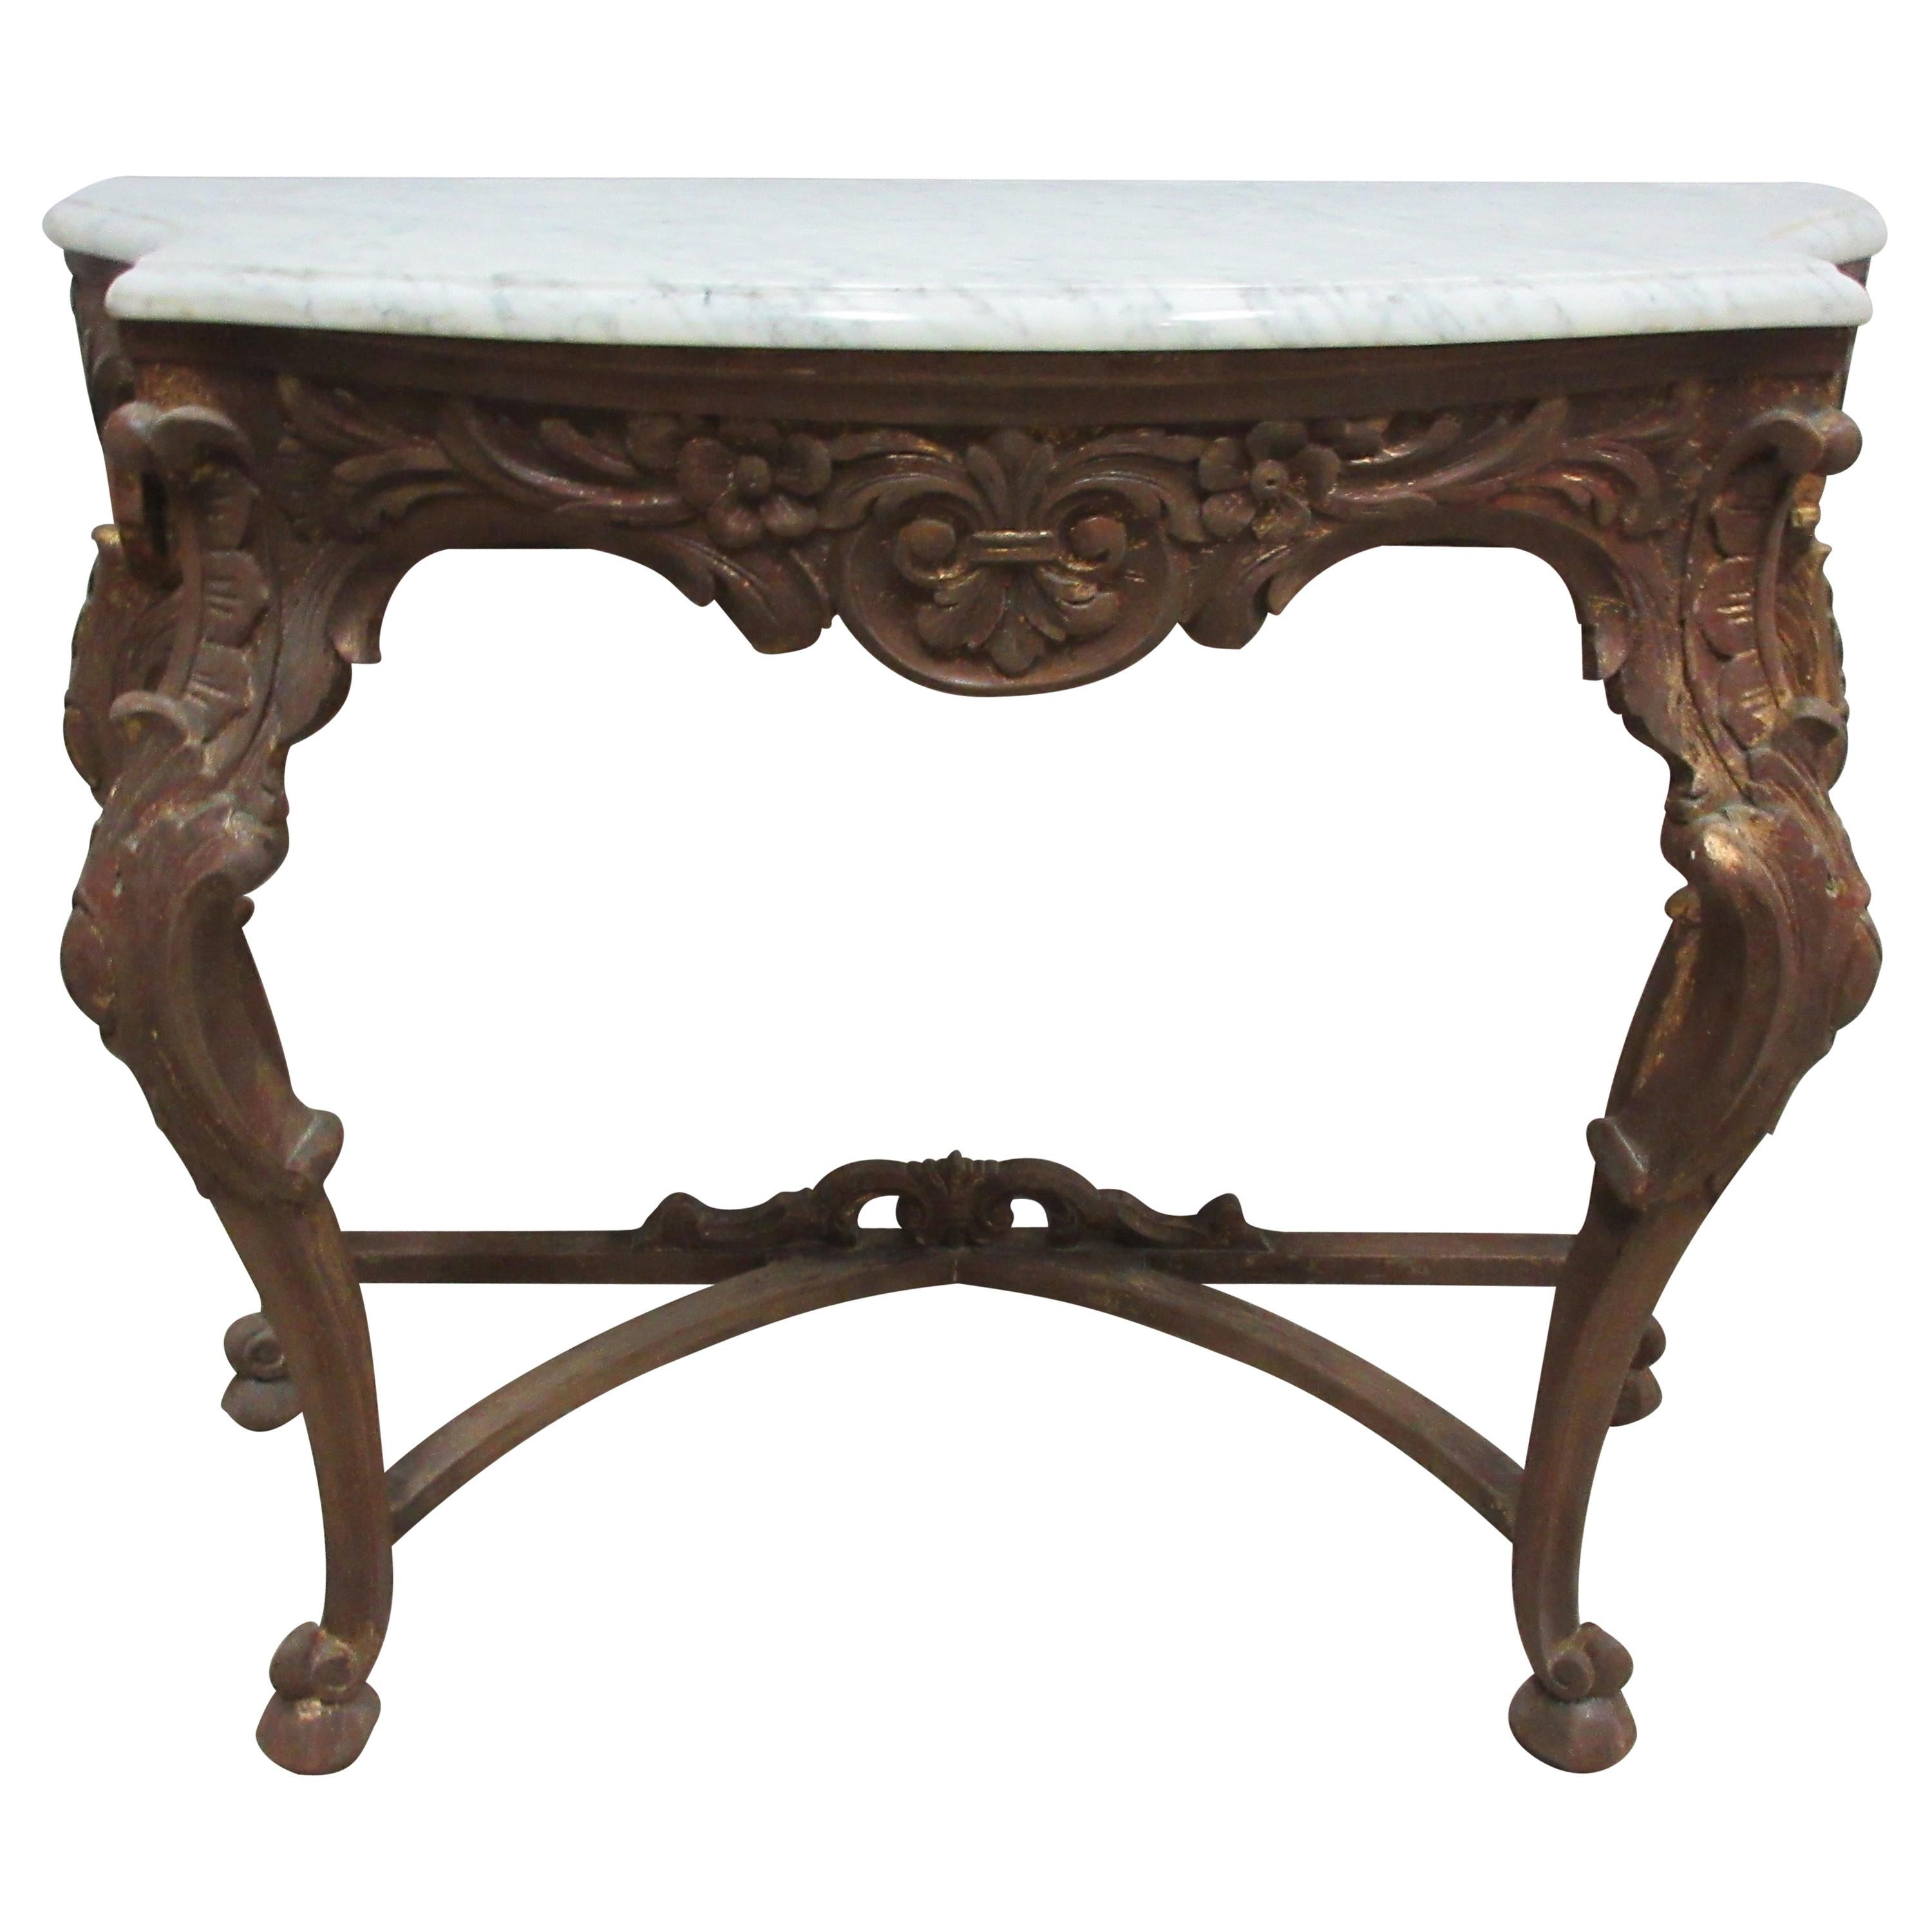 Original Swedish Rococo Console Table For Sale